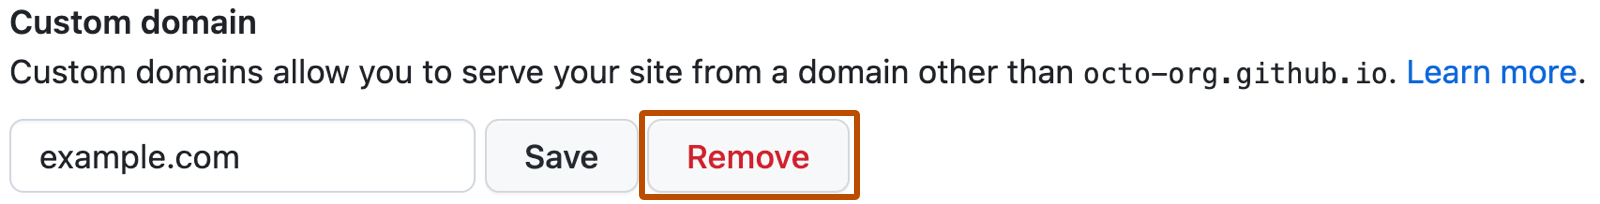 Кнопка для сохранения личного домена